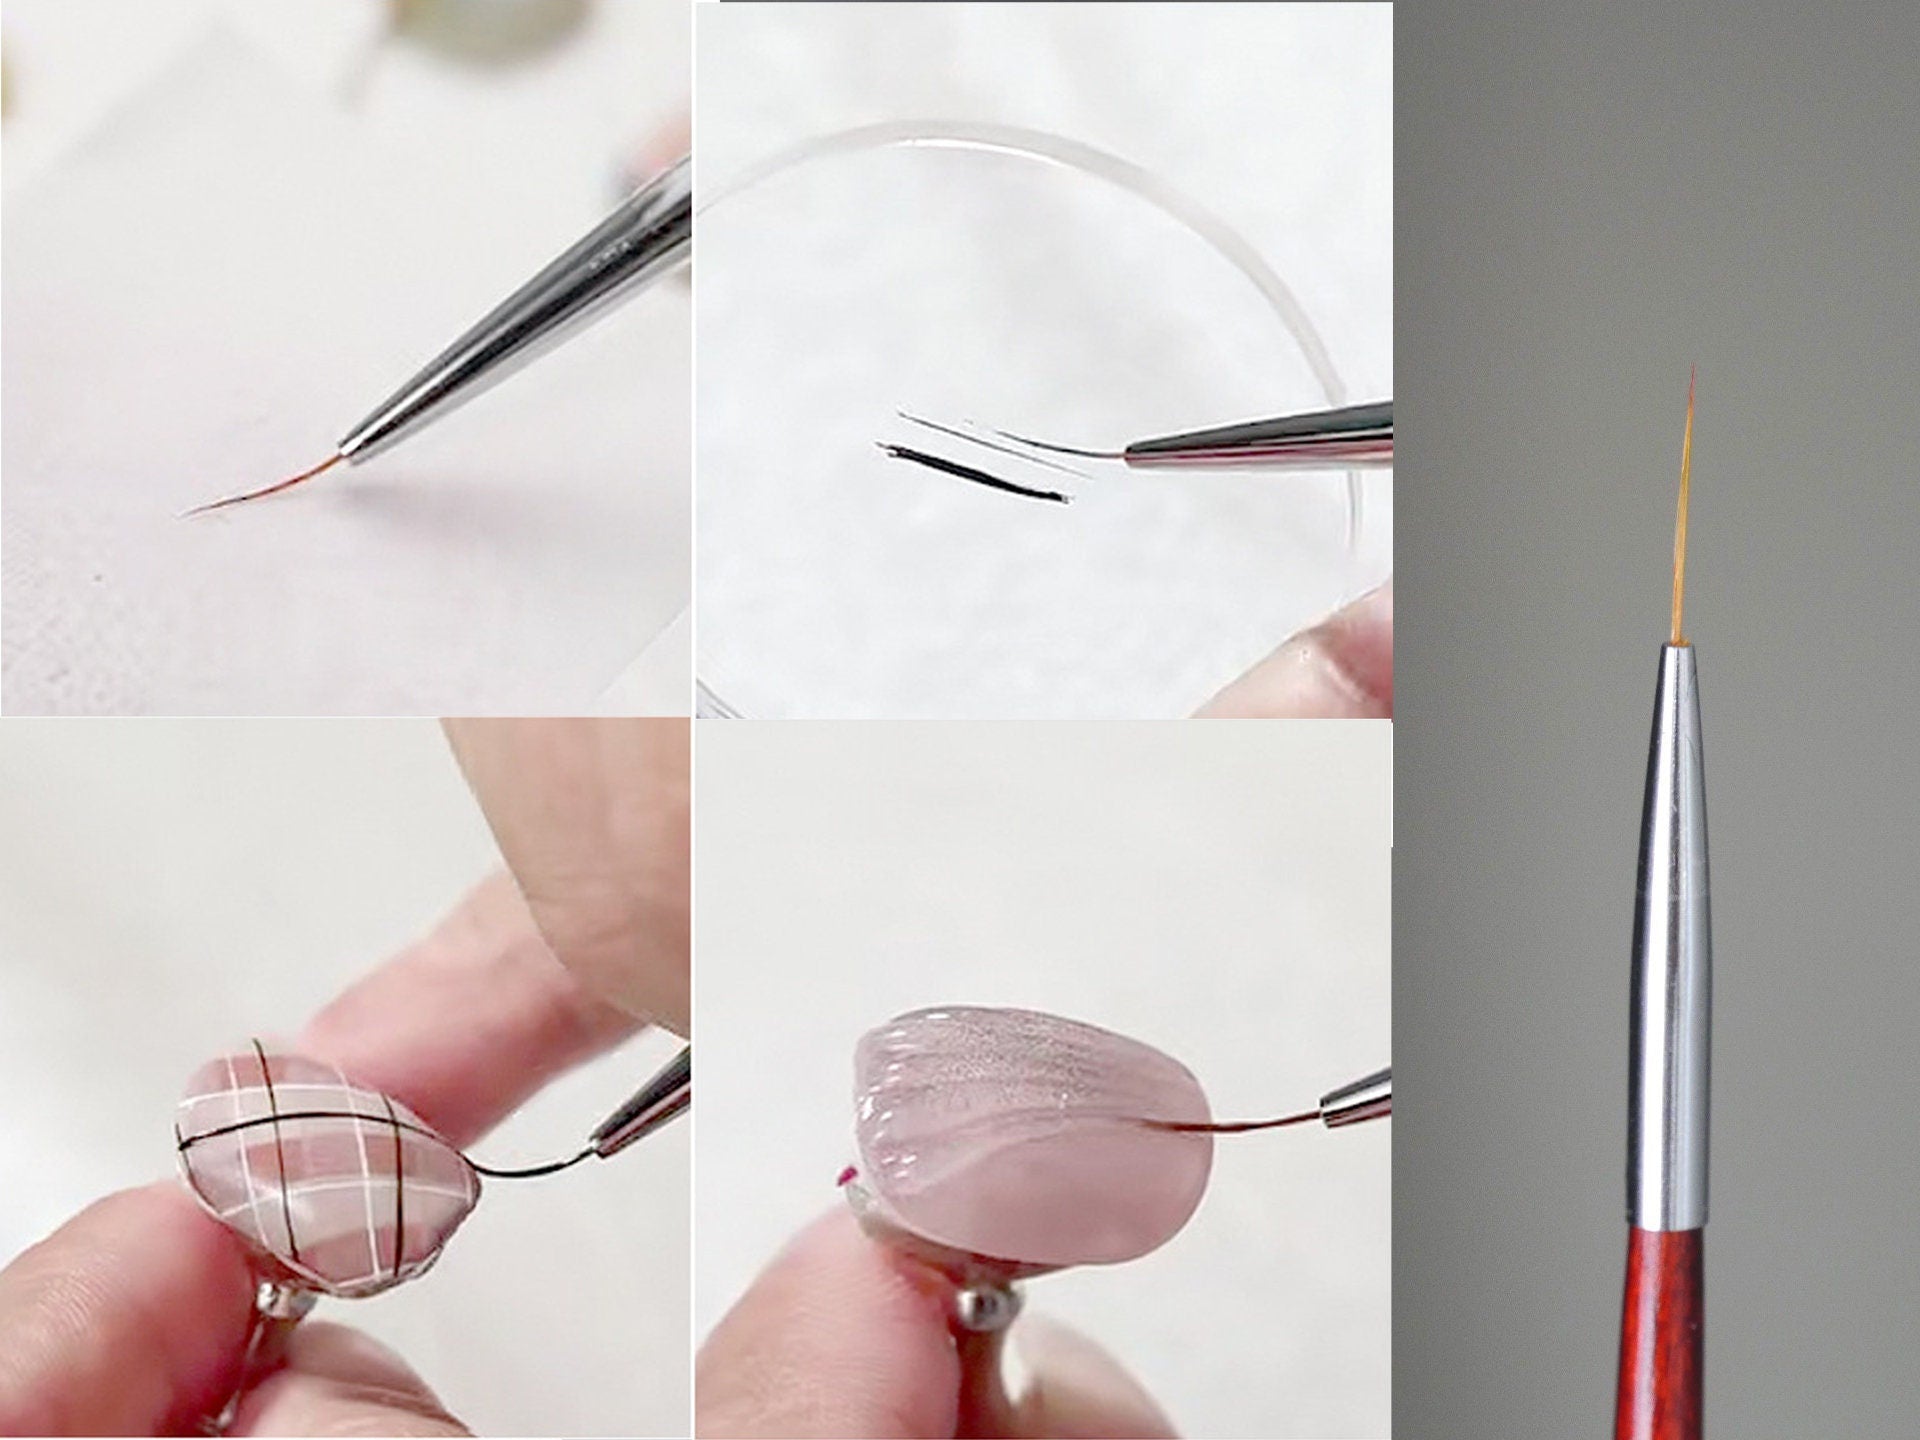 15mm Nail Brush Detailing Striping Nail Art Pen, liner brush, Painting Brushes/ Lining painting brush Nail Supply